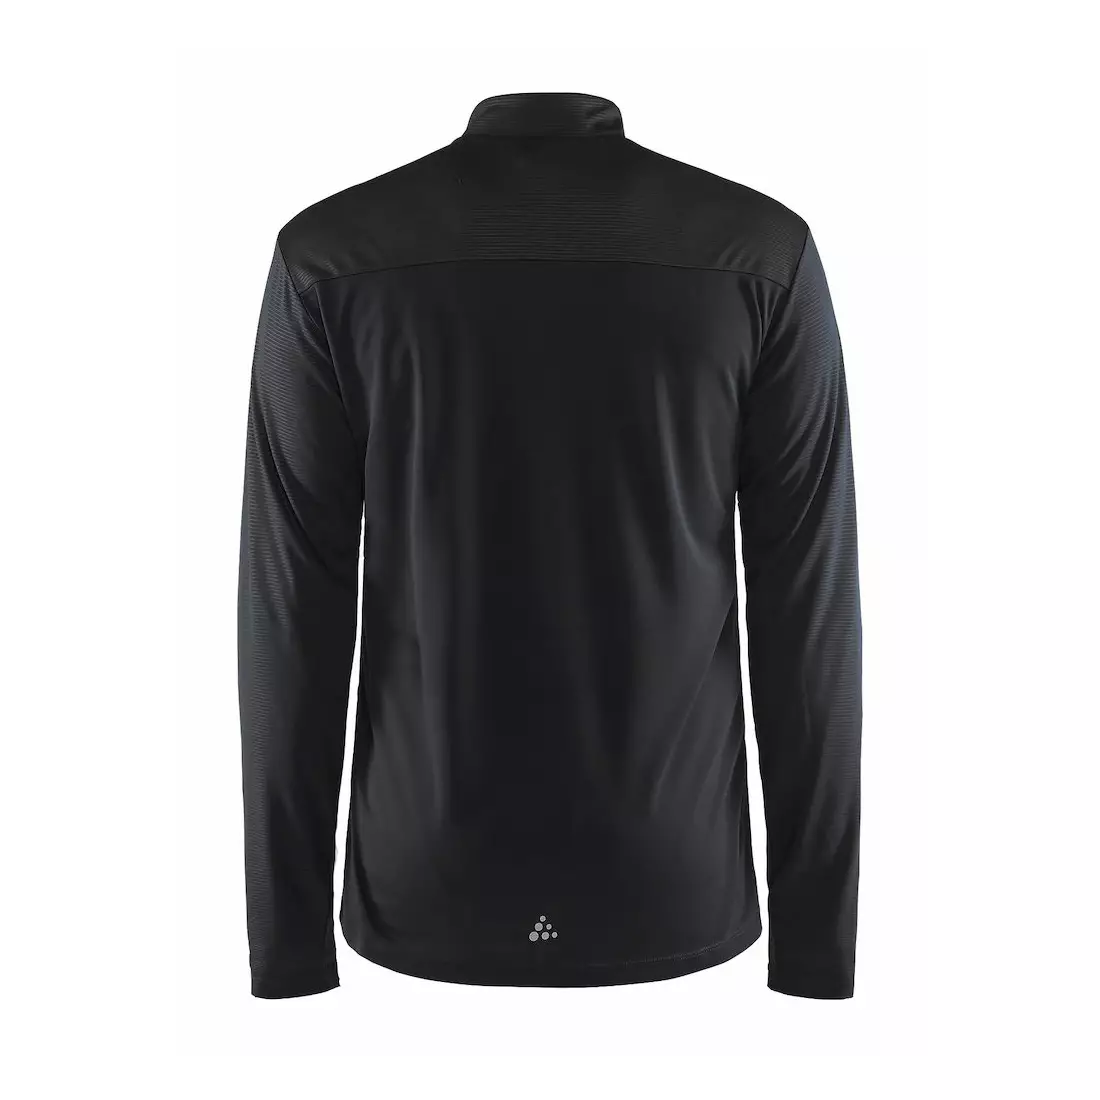 CRAFT RADIATE LS 1905387-999603 běžecká košile s dlouhým rukávem černá